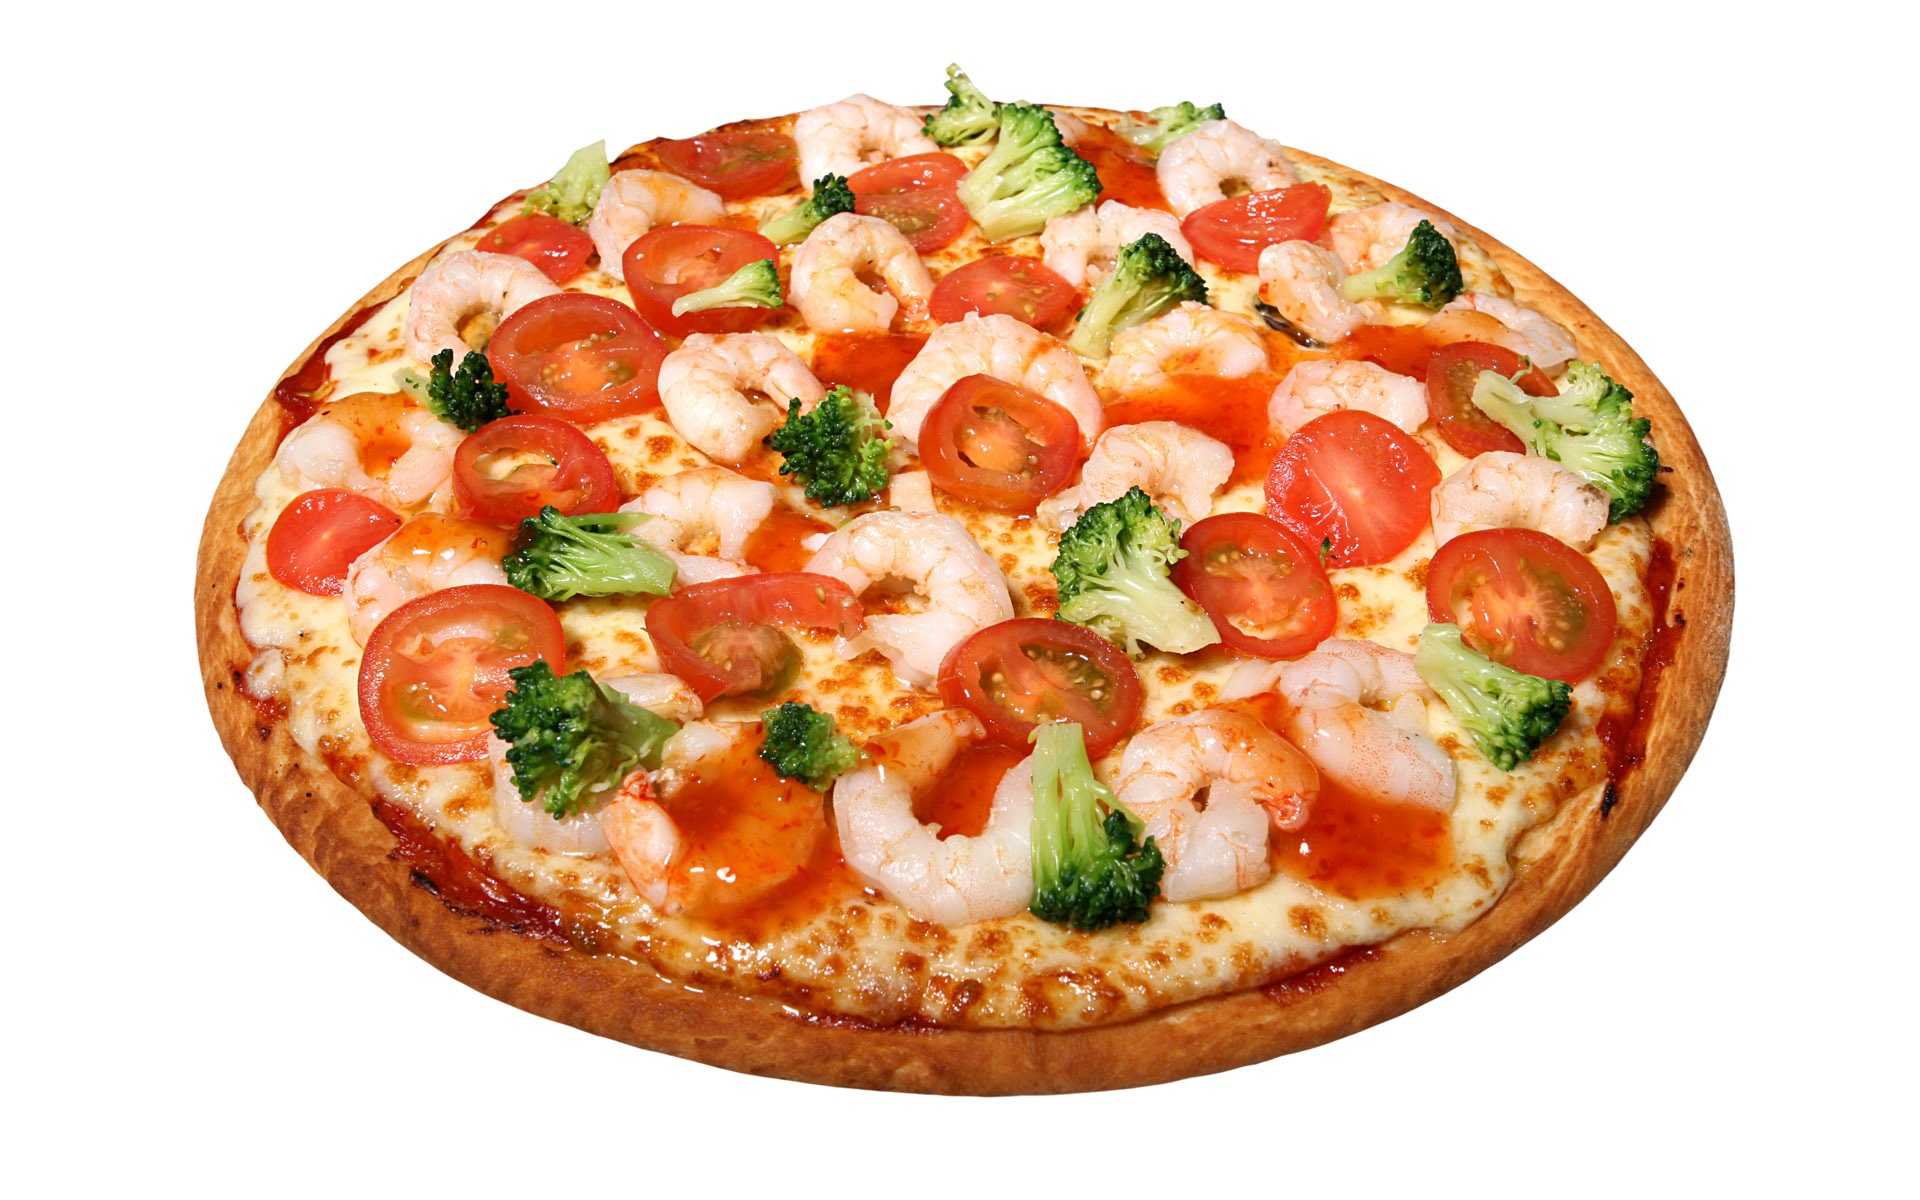 Fondos de pizzerías de Alimentos (4) #13 - 1920x1200